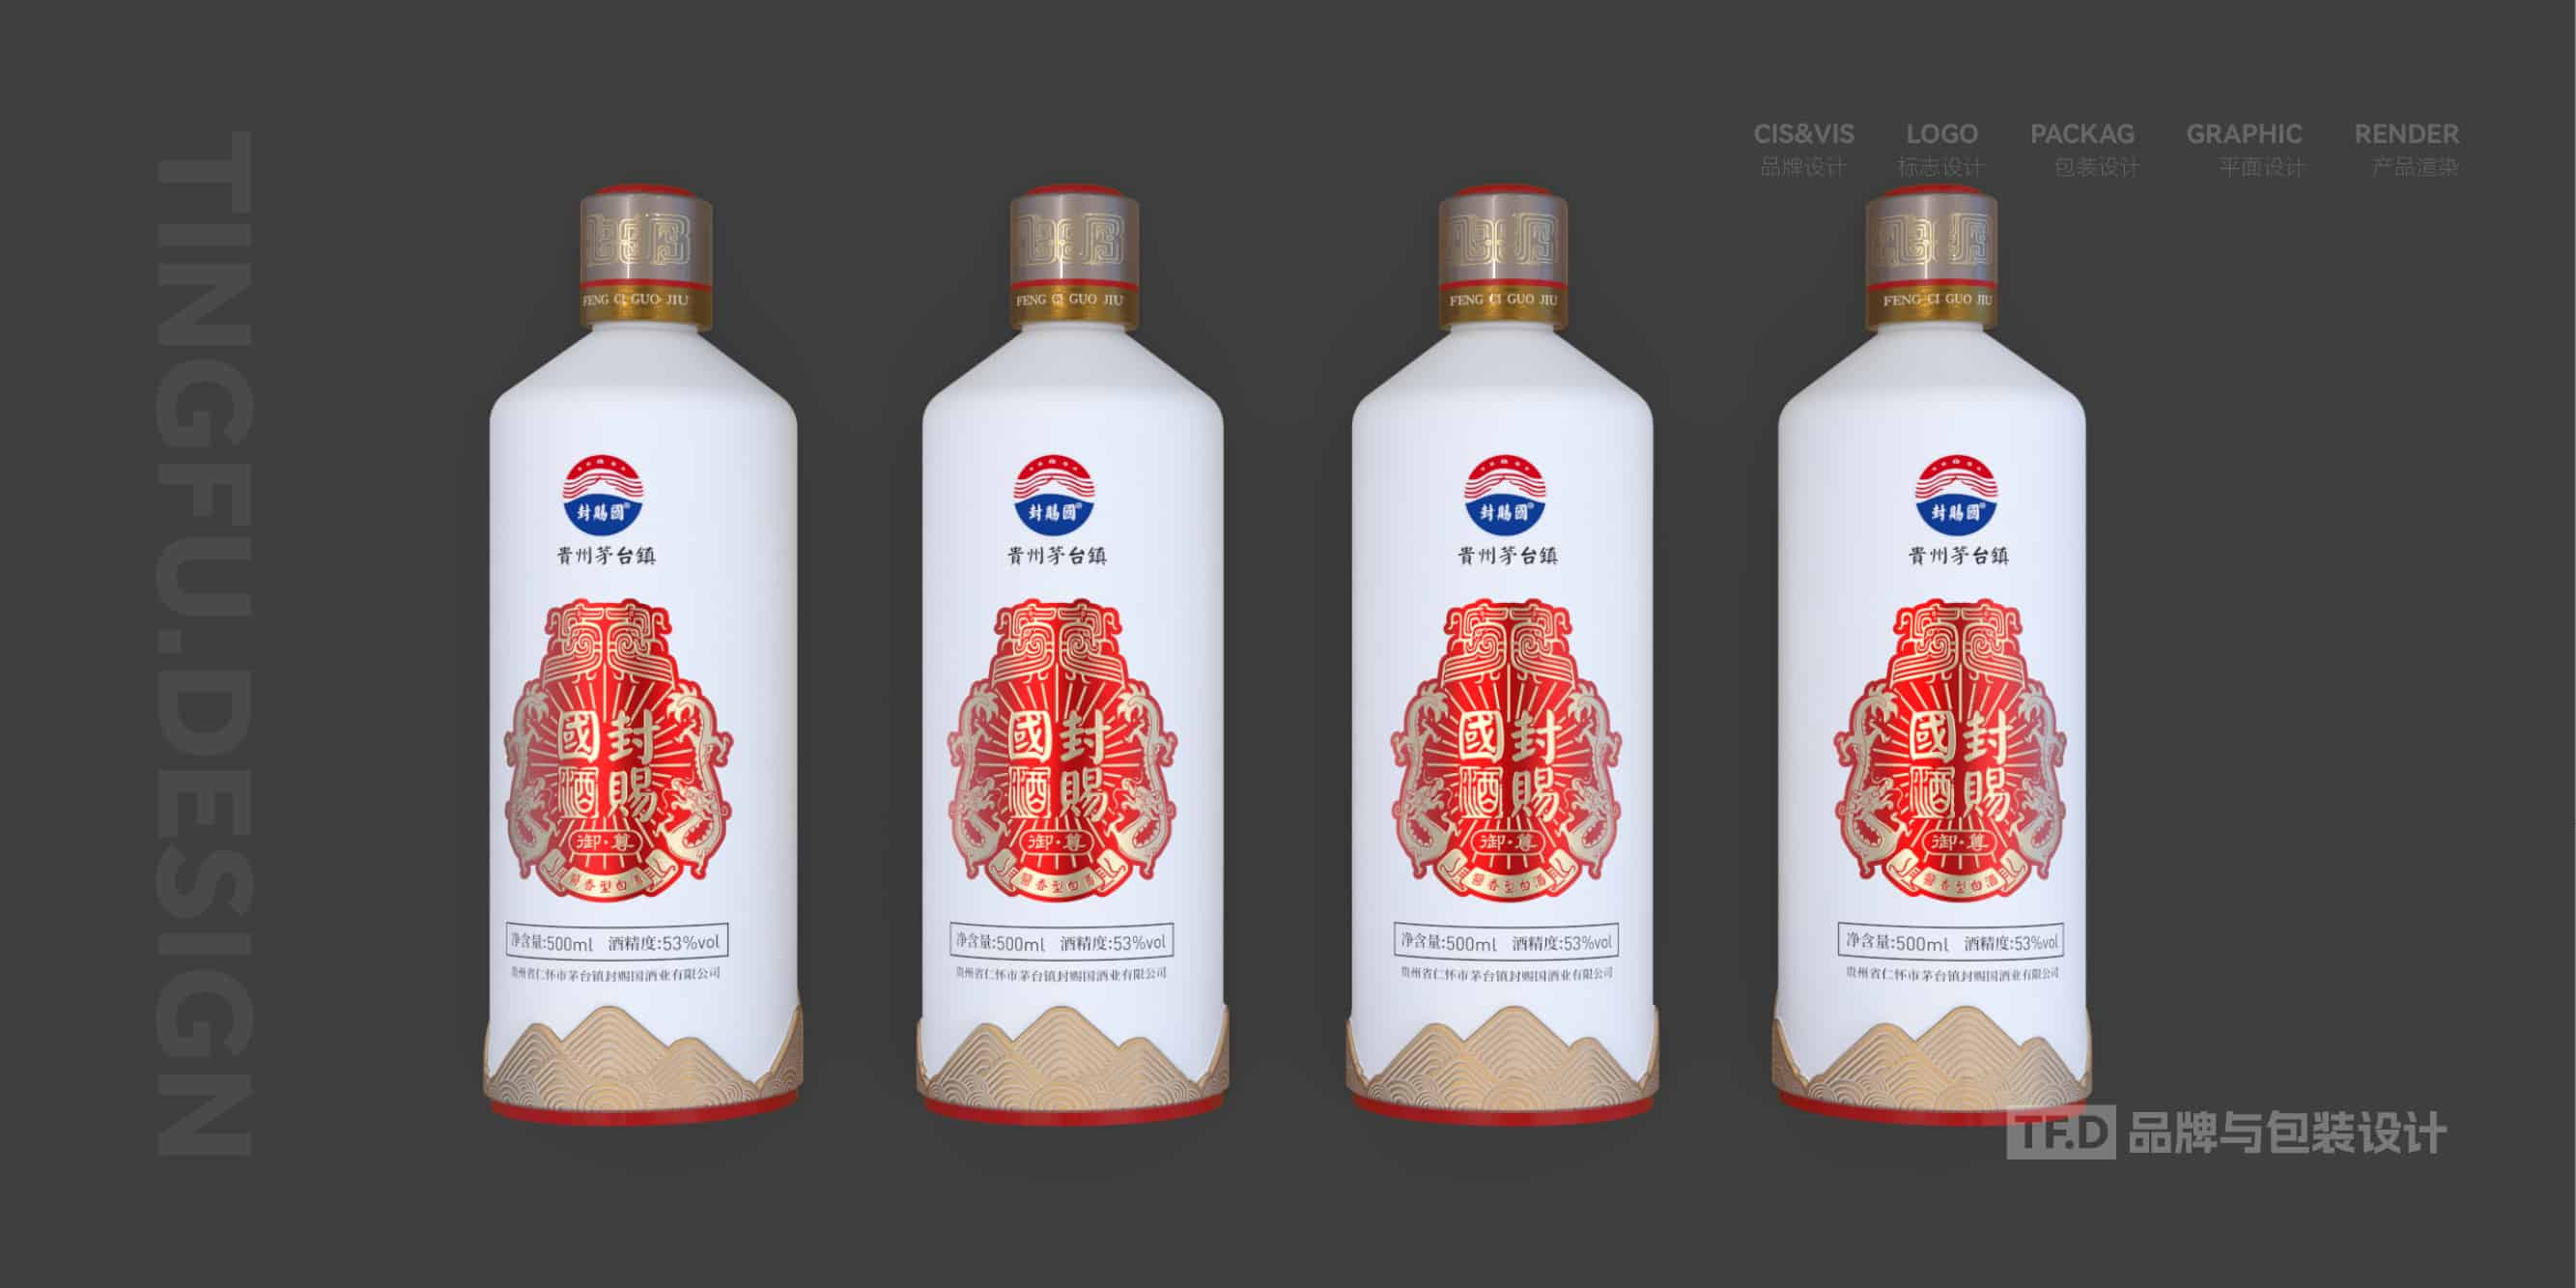 TFD品牌与包装设计-部分酒包装设计案例17-tuya.jpg